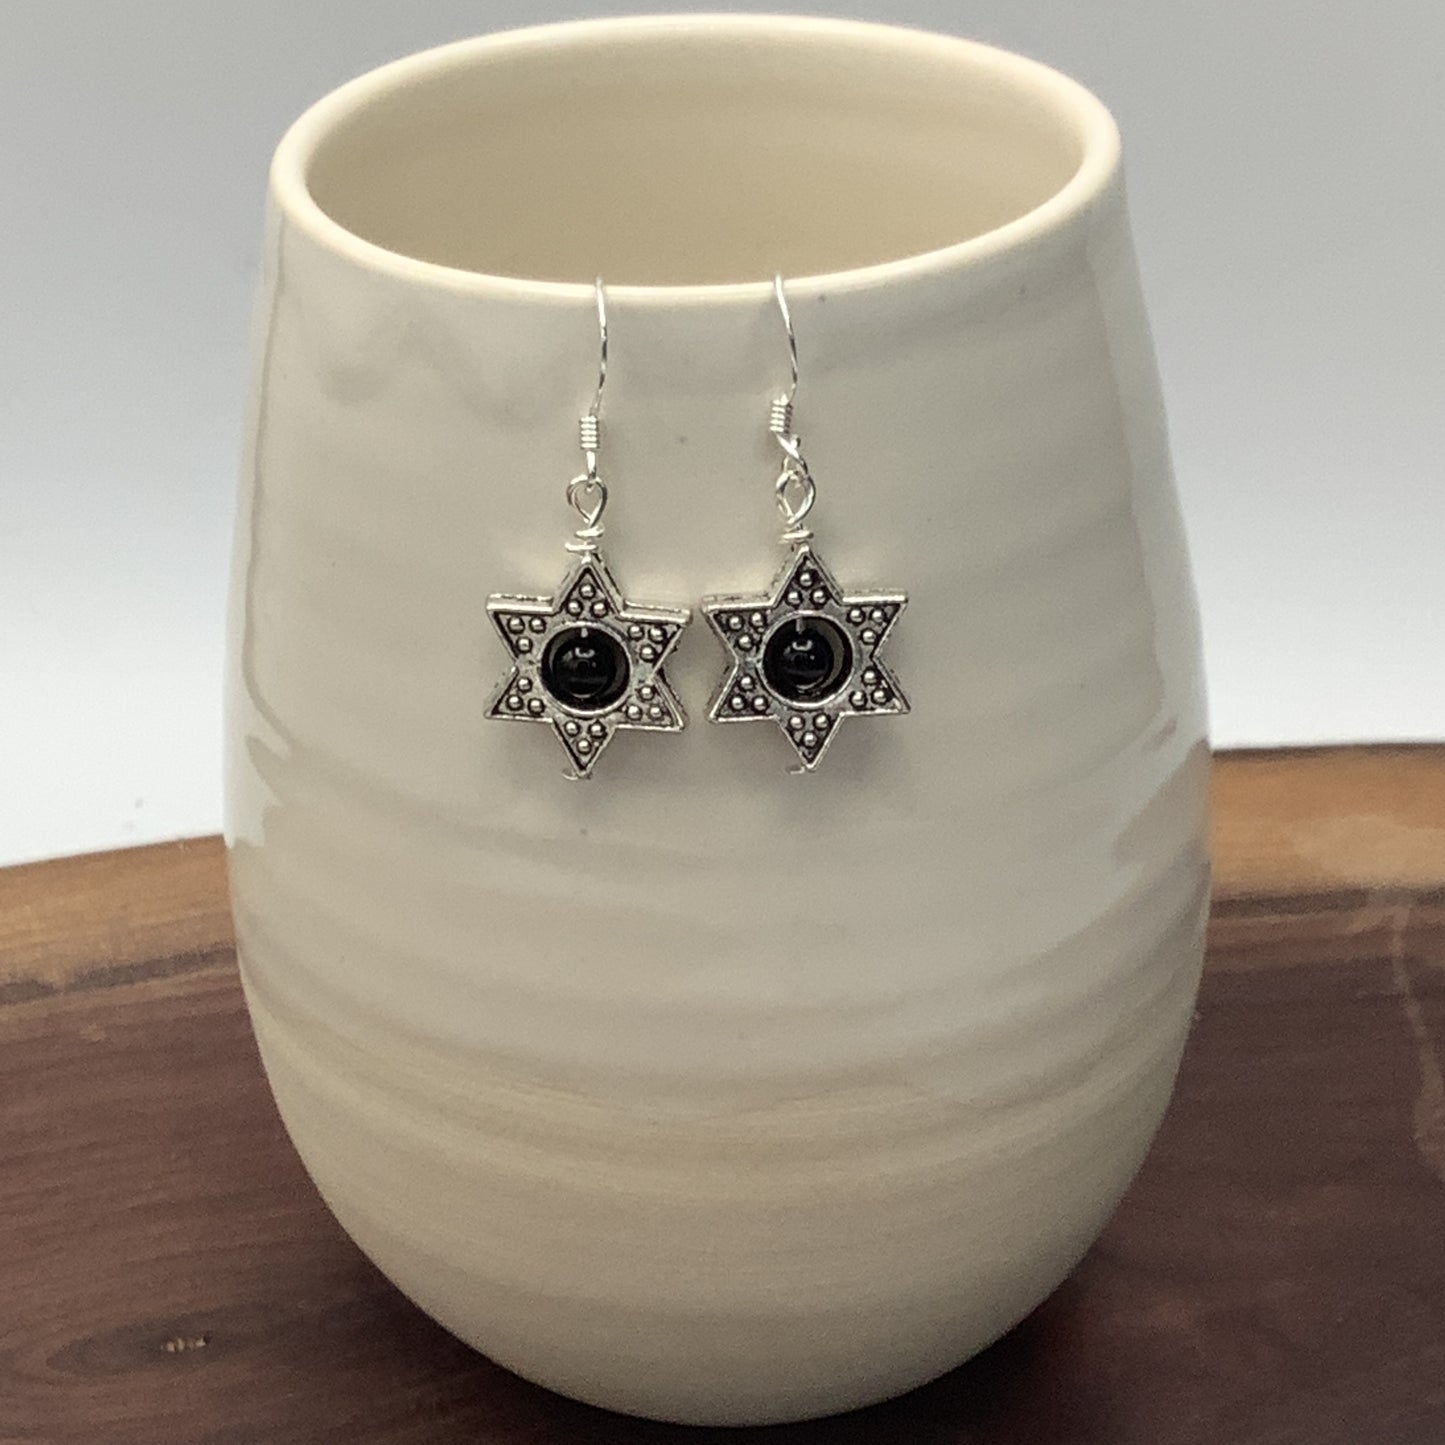 Obsidian Star Earrings with Sterling Silver Earwire